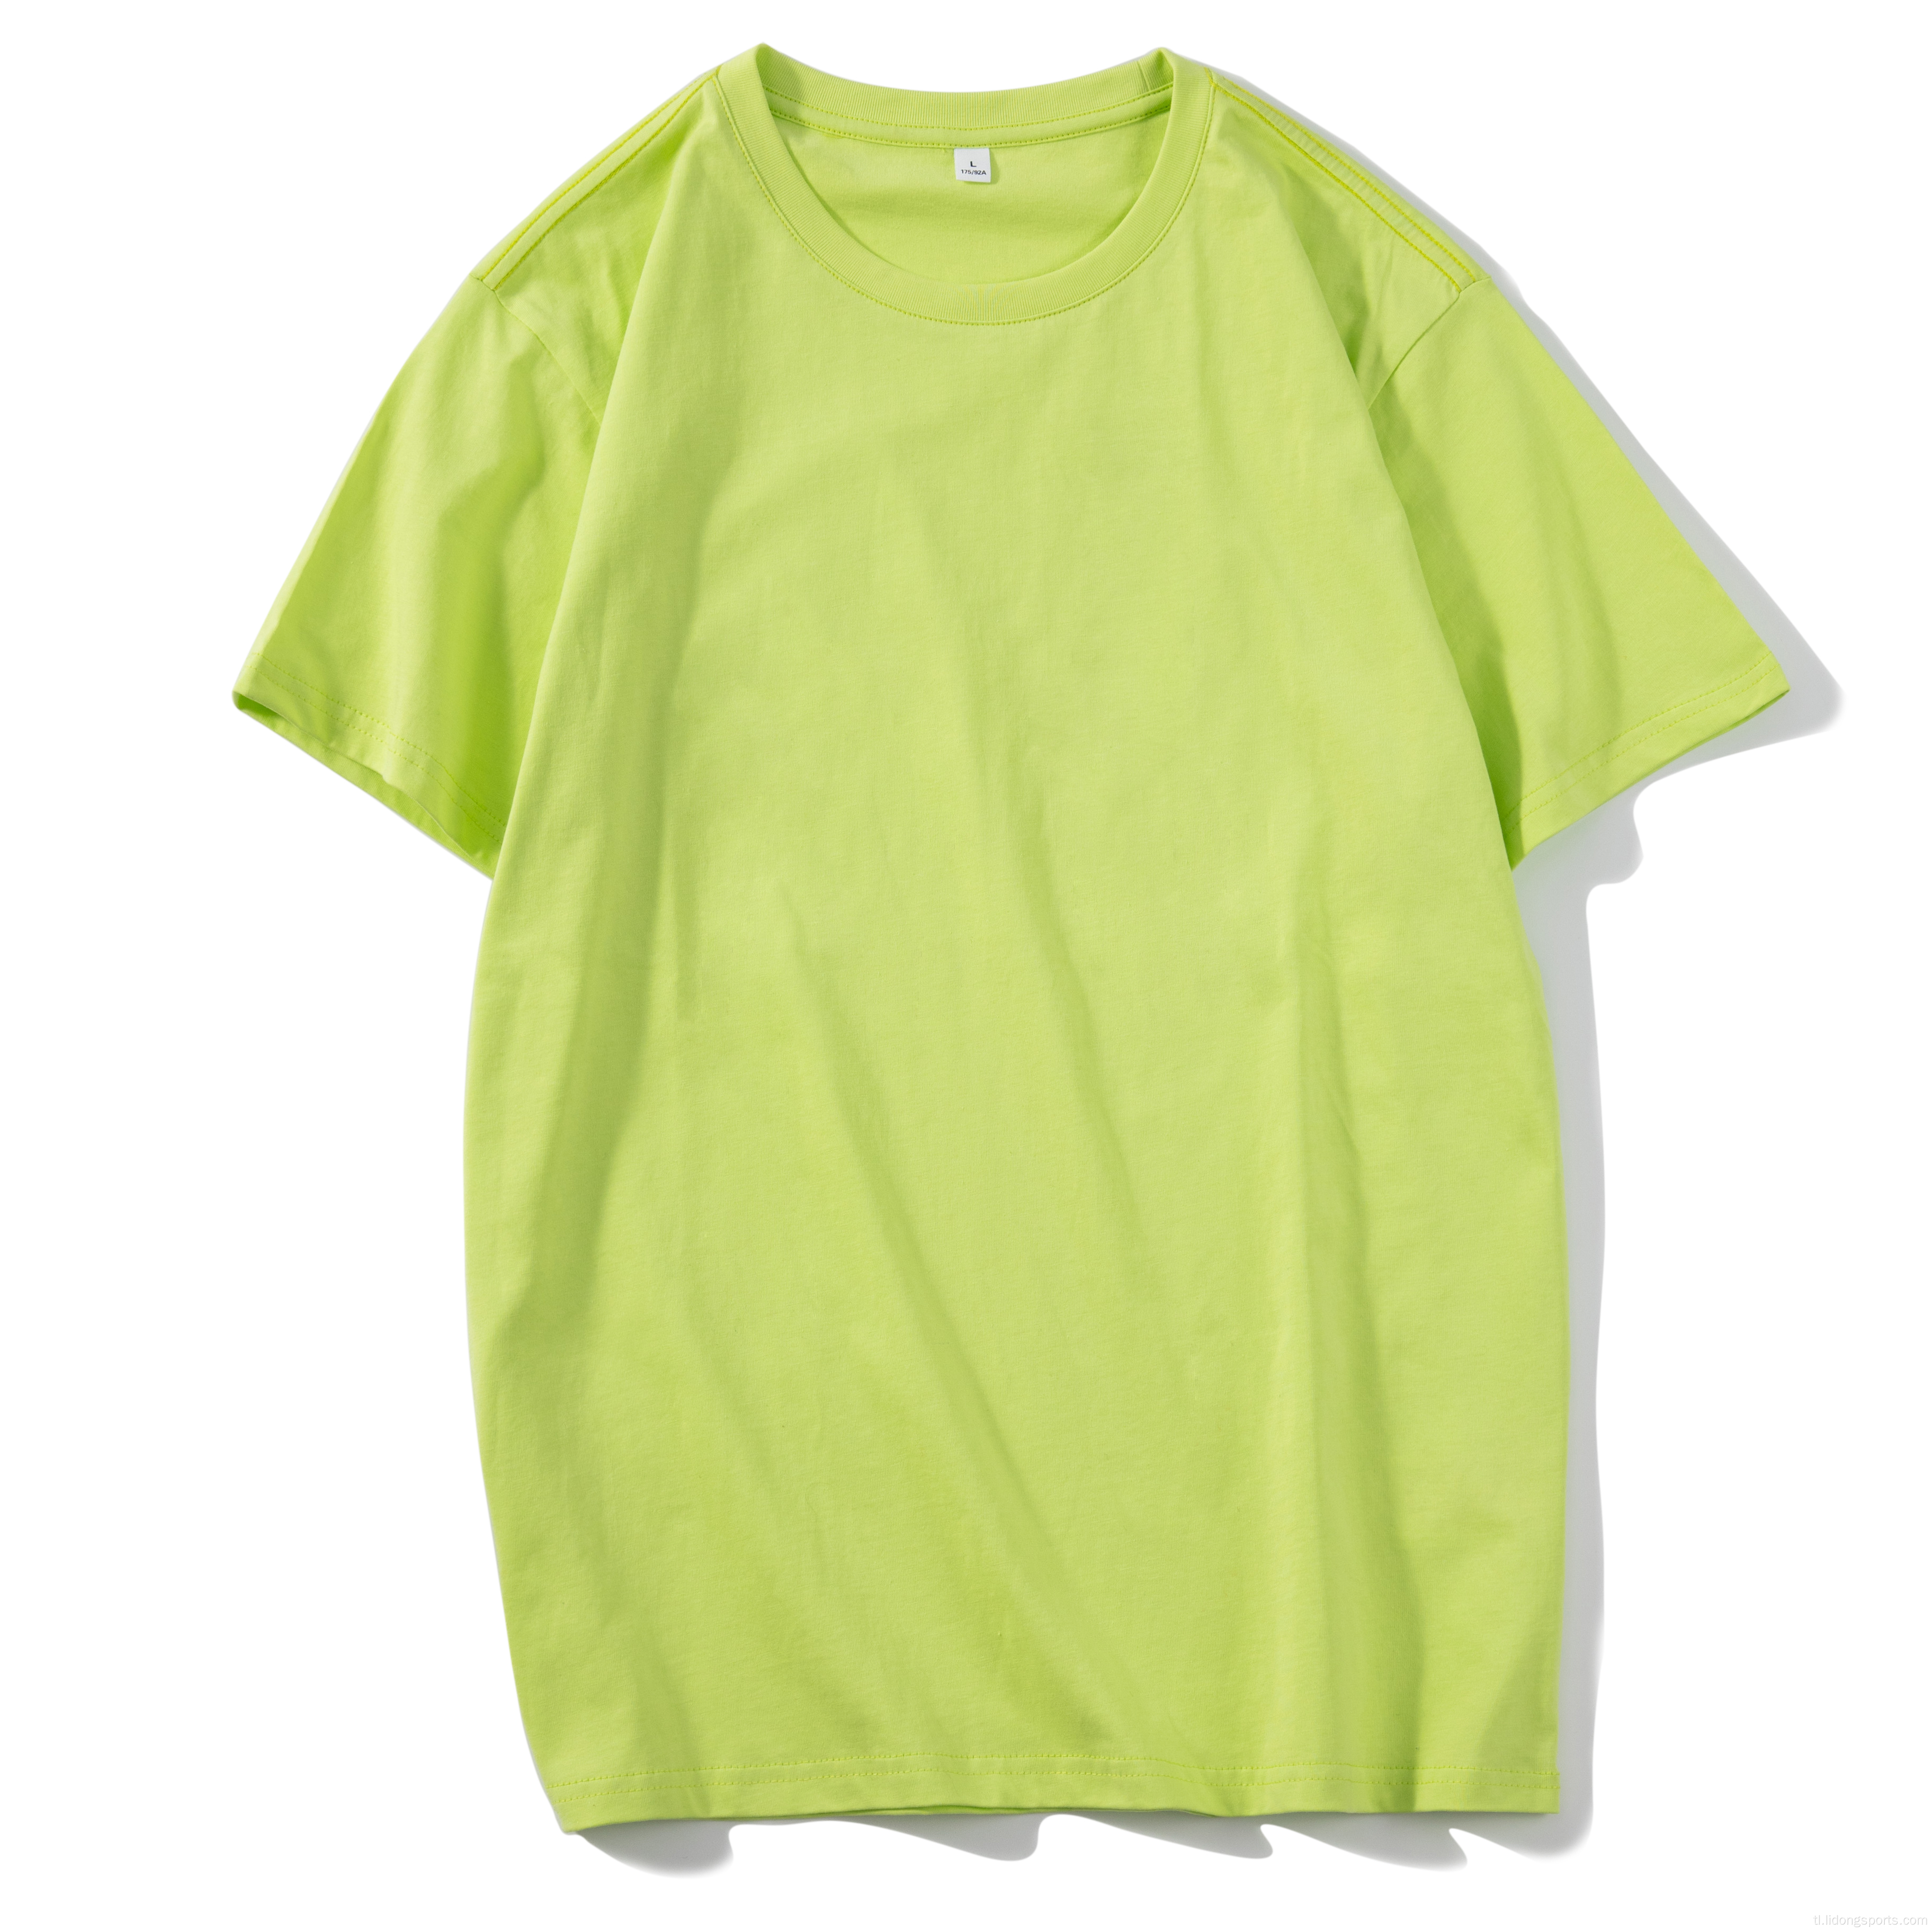 Unisex plain 100% cotton women men&#39;s o-neck t-shirt